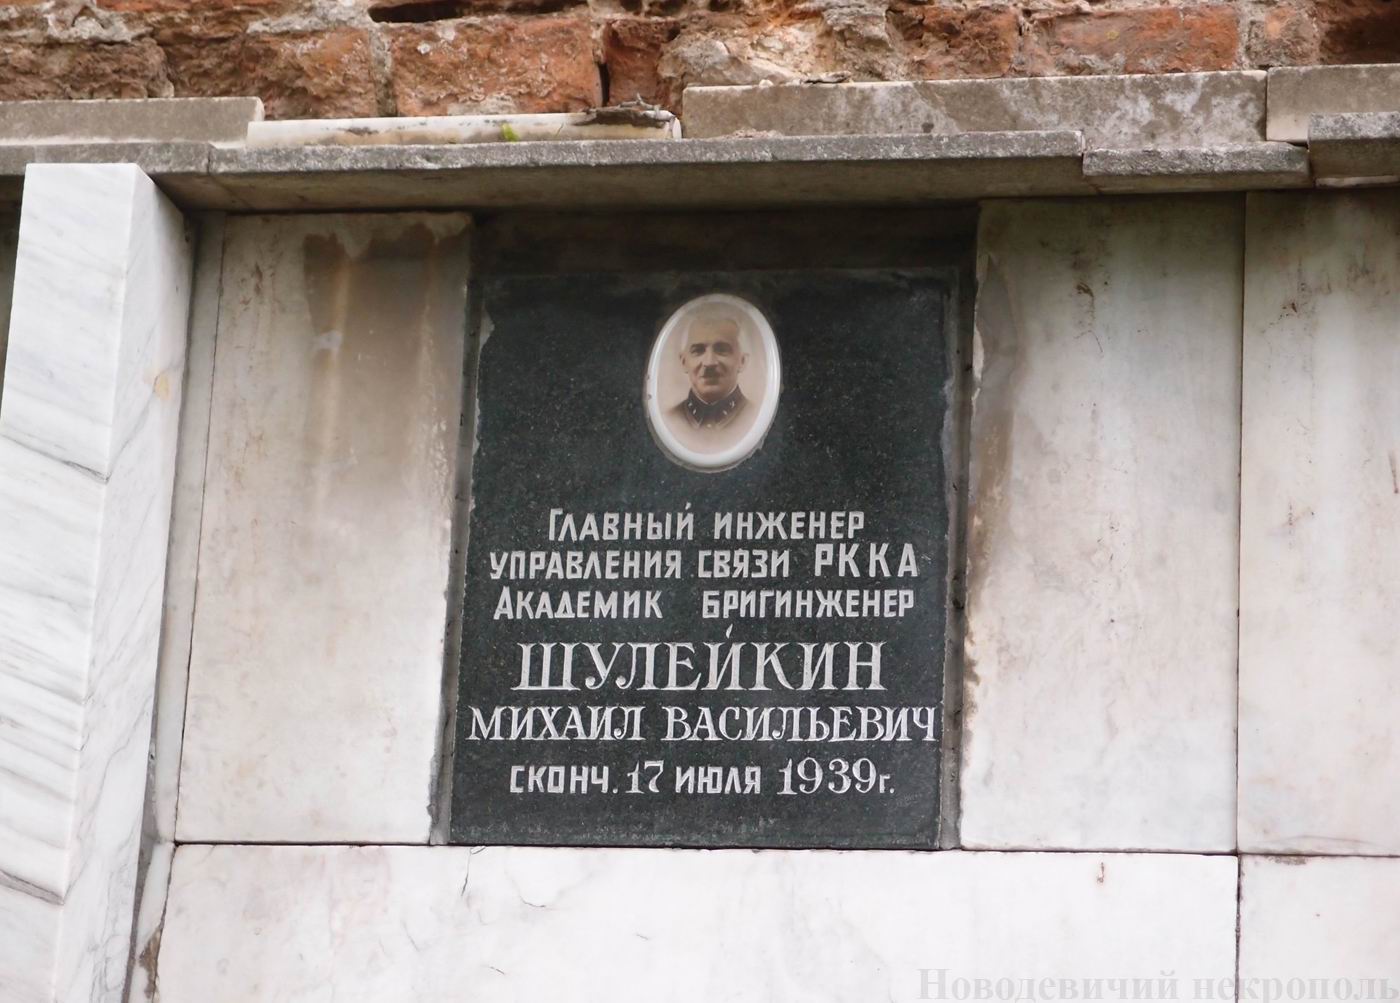 Плита на нише Шулейкина М.В. (1884–1939), на Новодевичьем кладбище (колумбарий [1]–43–1).